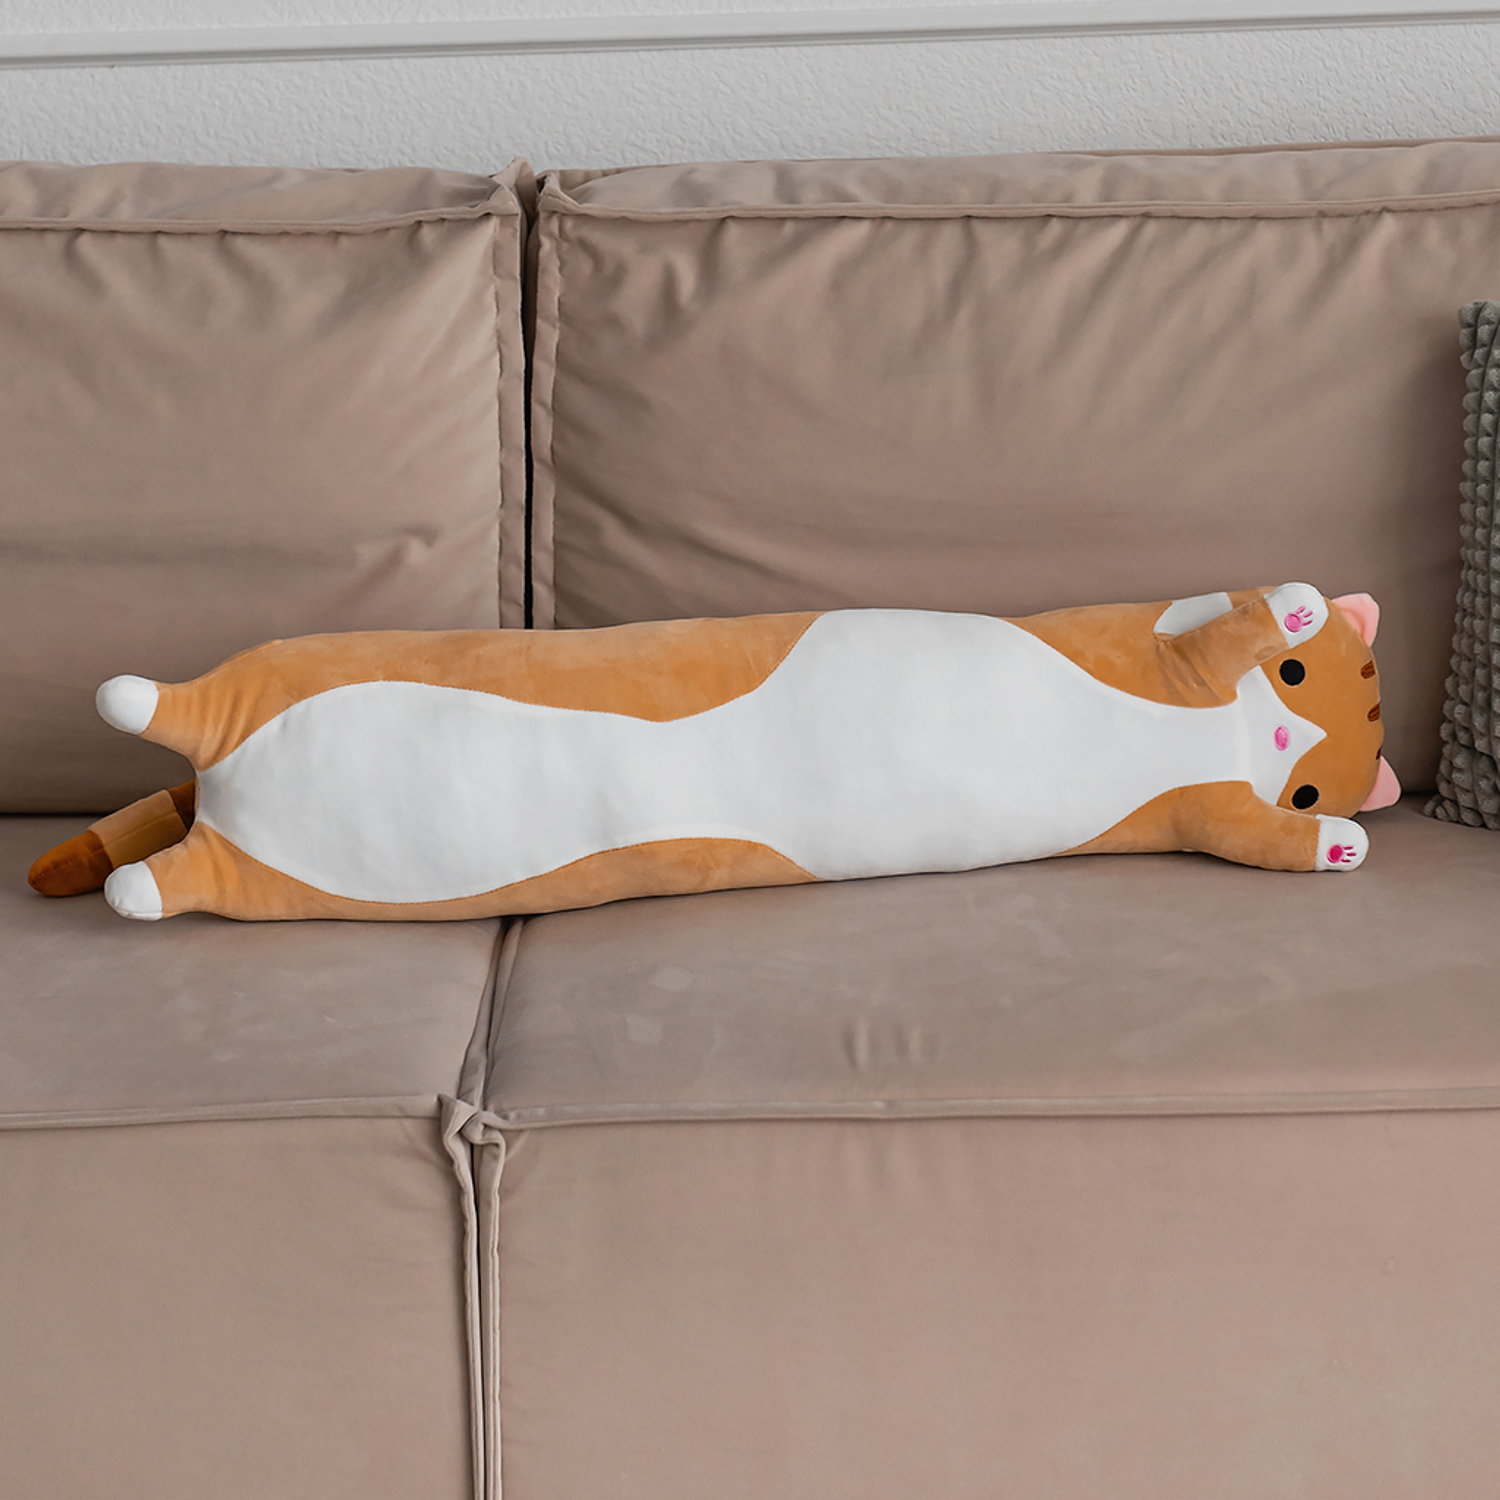 Мягкая игрушка кошка подушка TOTTY TOYS кот батон 90 см коричневый антистресс развивающая обнимашка - фото 3